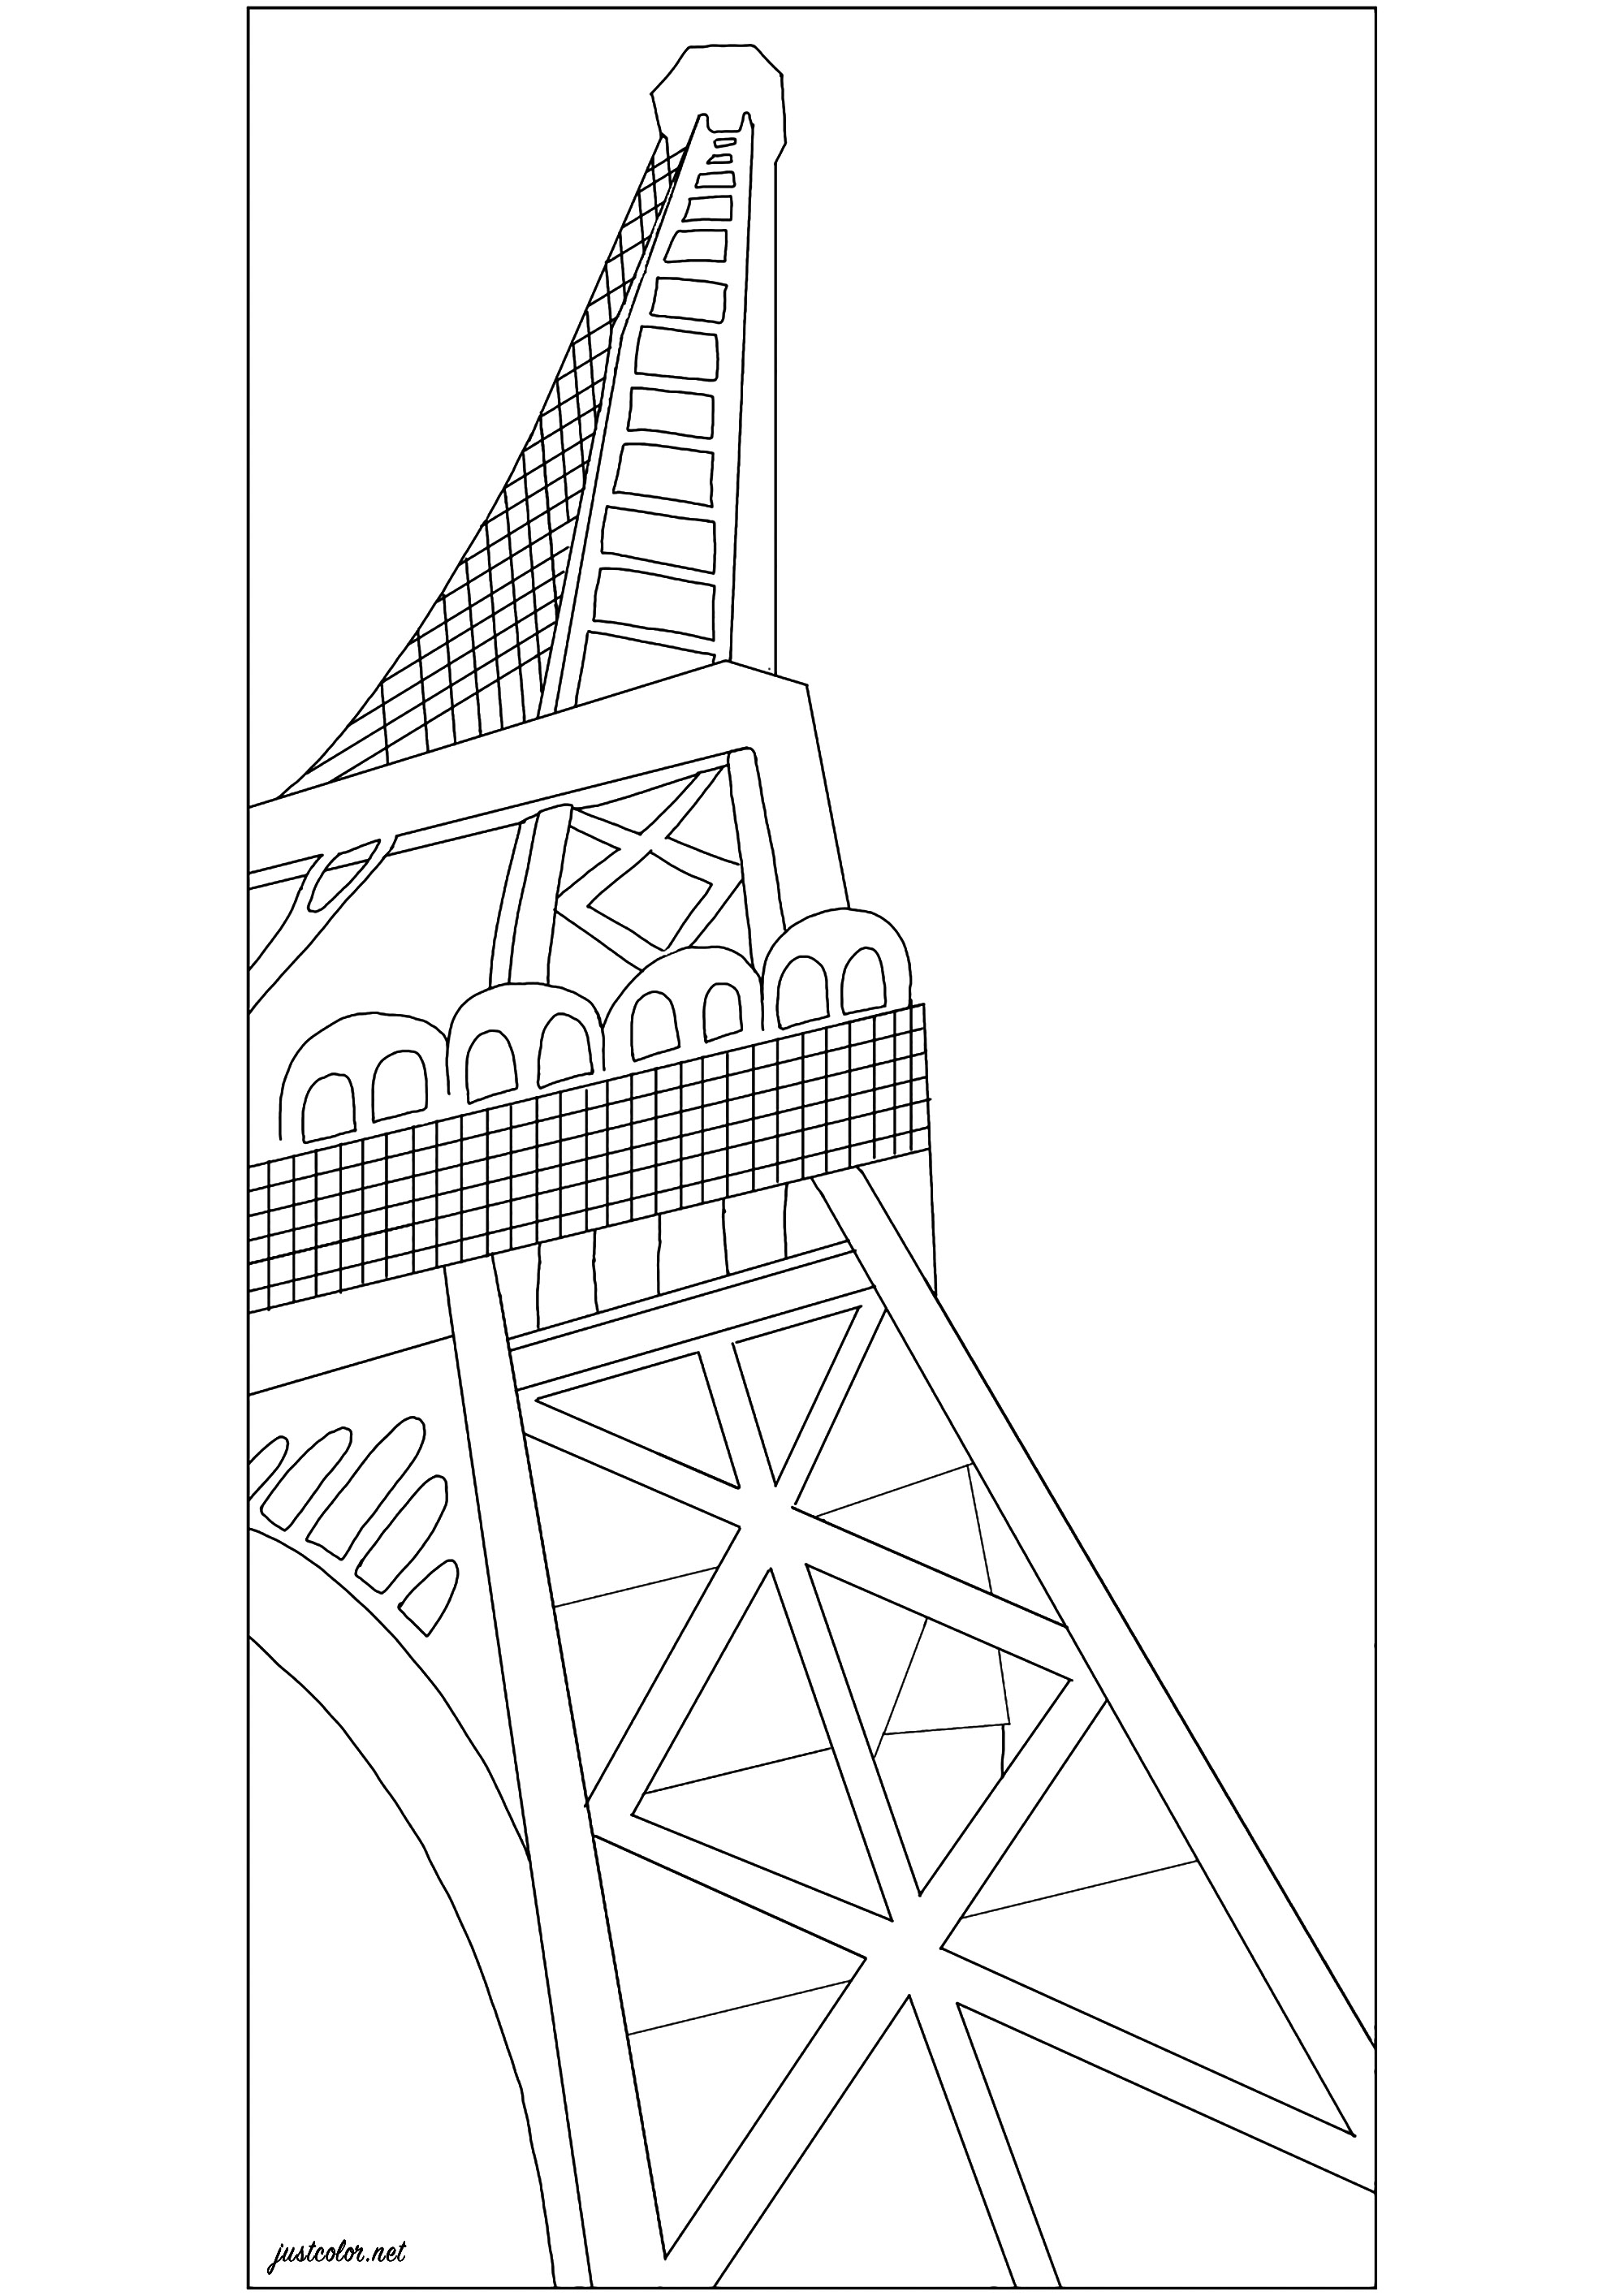 Colorazione basata su 'La Torre Eiffel' (1926) di Robert Delaunay. La Torre Eiffel, costruita da Gustave Eiffel nel 1889, divenne un simbolo della modernità che affascinò il pittore Robert Delaunay. Dopo averla scomposta in un'importante serie cubista all'inizio degli anni Dieci, l'artista la glorificò utilizzando colori sgargianti e un potente effetto di vista dal basso, spesso adottato dai fotografi dell'epoca, Artista : Jade F